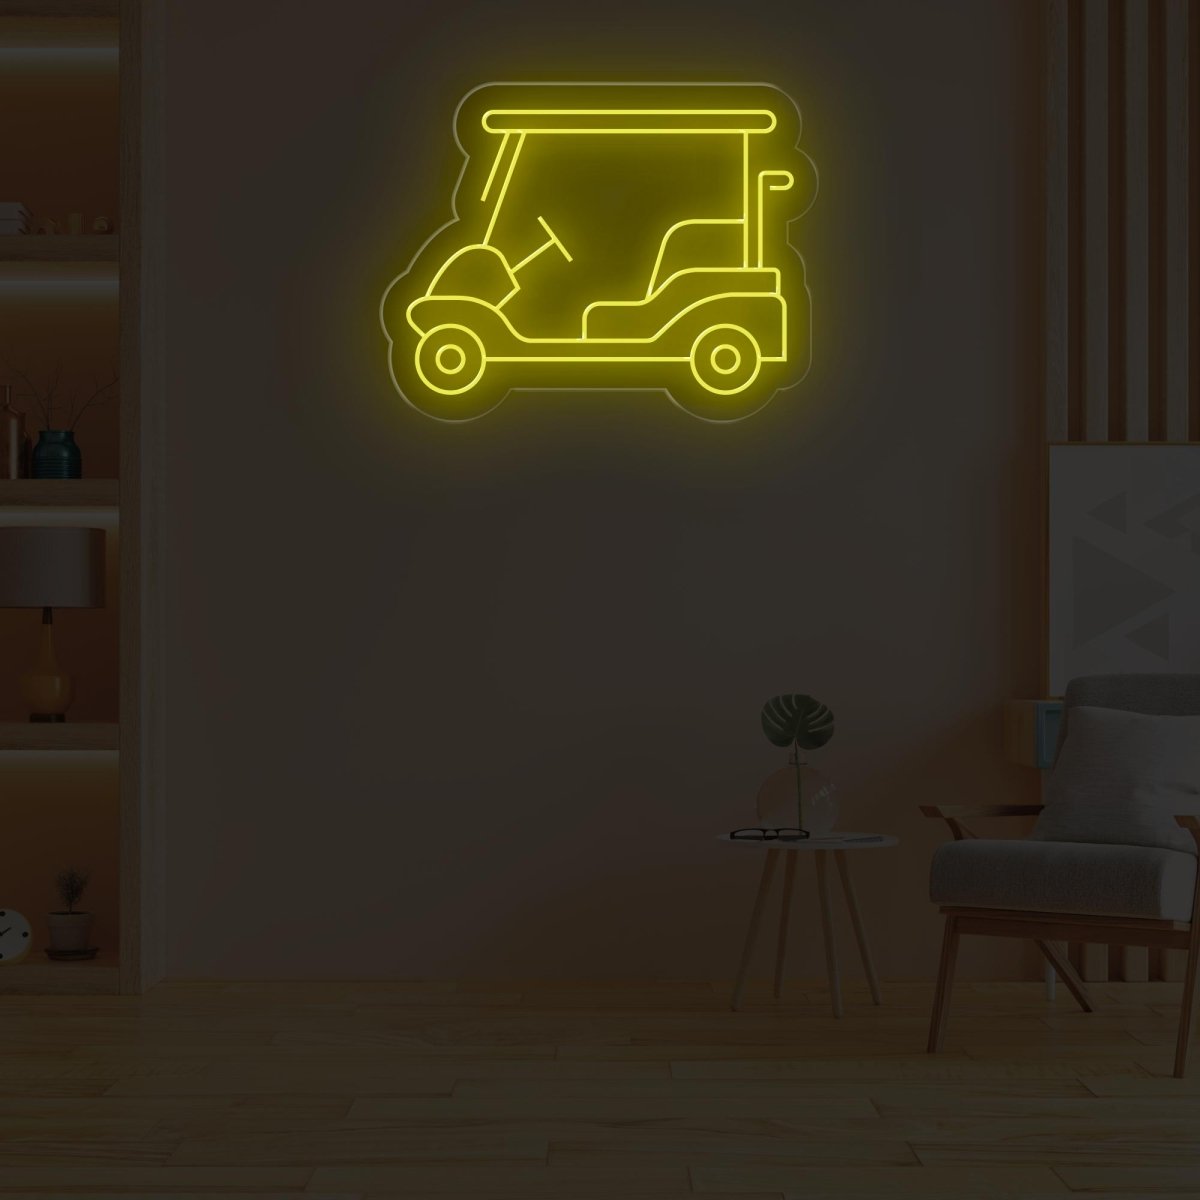 Golf Cart Neon Sign | Golf Cart Parking Outdoor LED Light - NEONXPERT